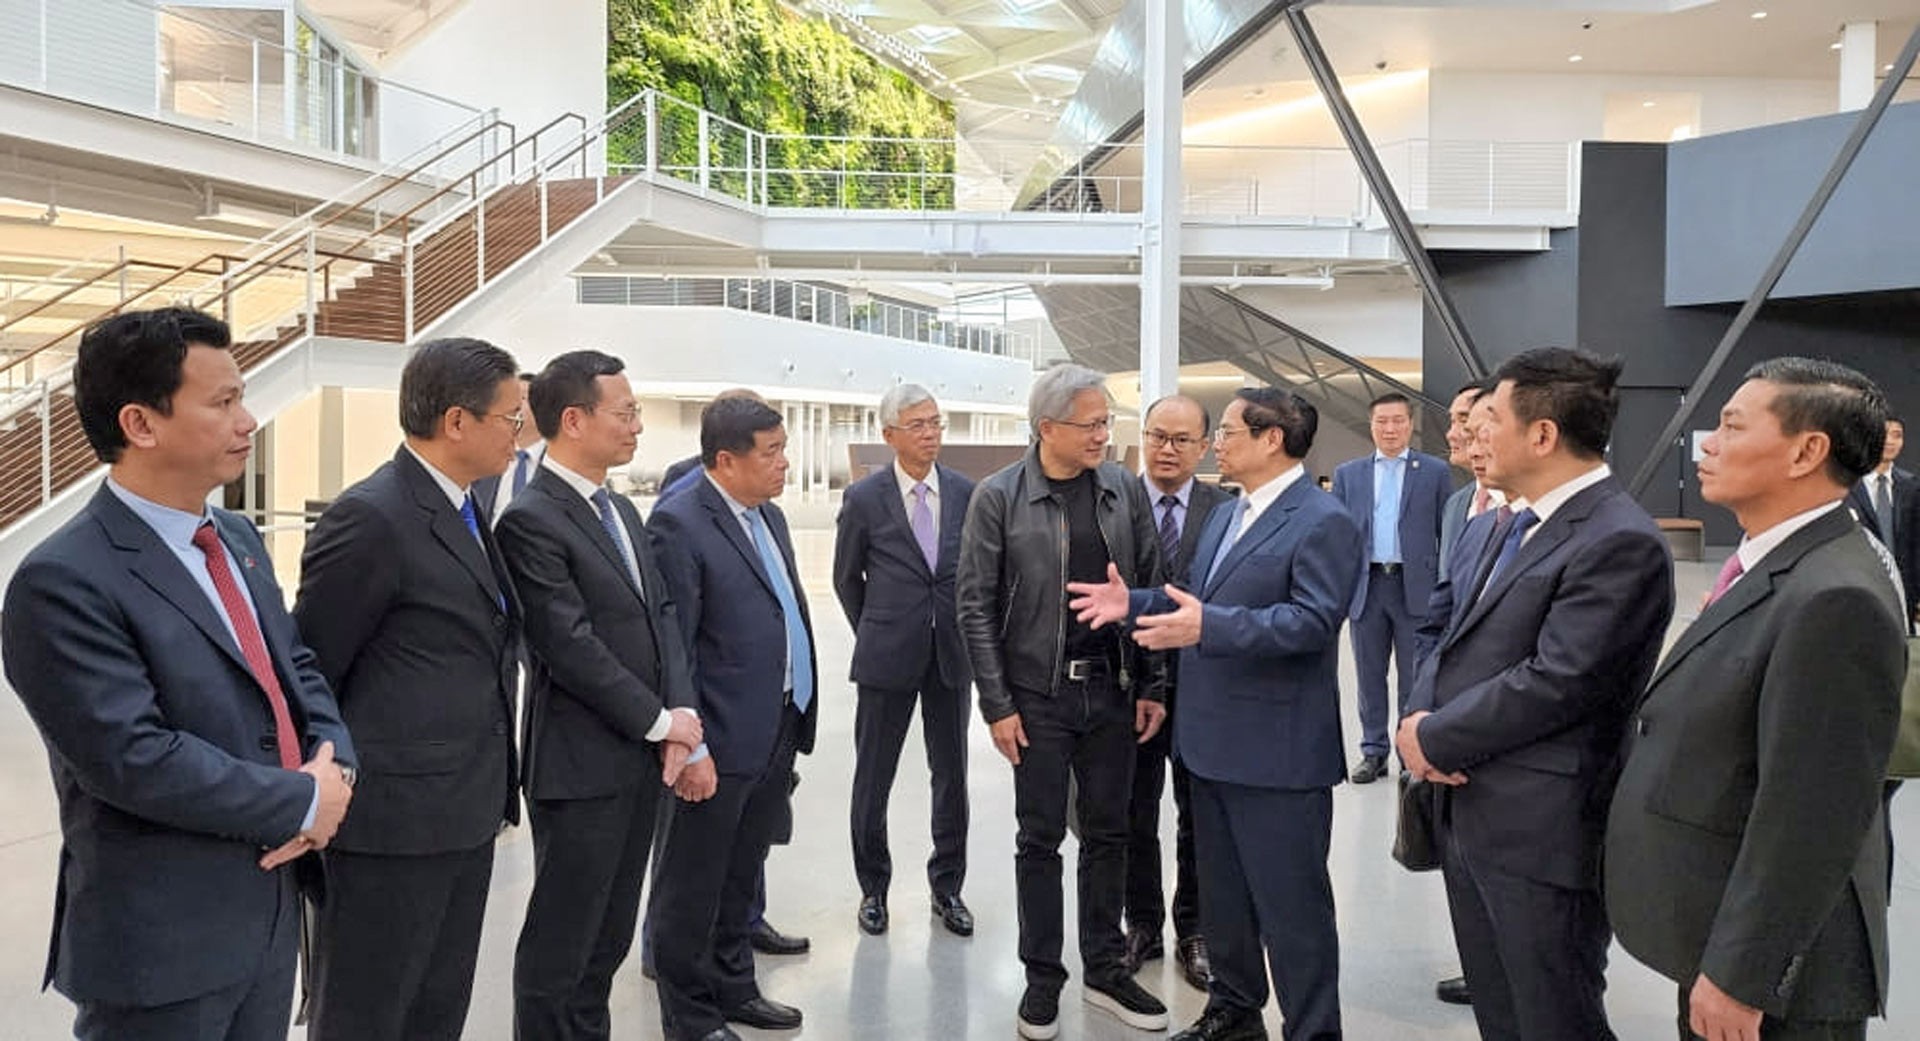 Chủ tịch Jensen Huang đã cảm nhận được sự chân thành từ Lãnh đạo Việt Nam – Thủ tướng Chính phủ Phạm Minh Chính muốn đưa Việt Nam phát triển về công nghệ.